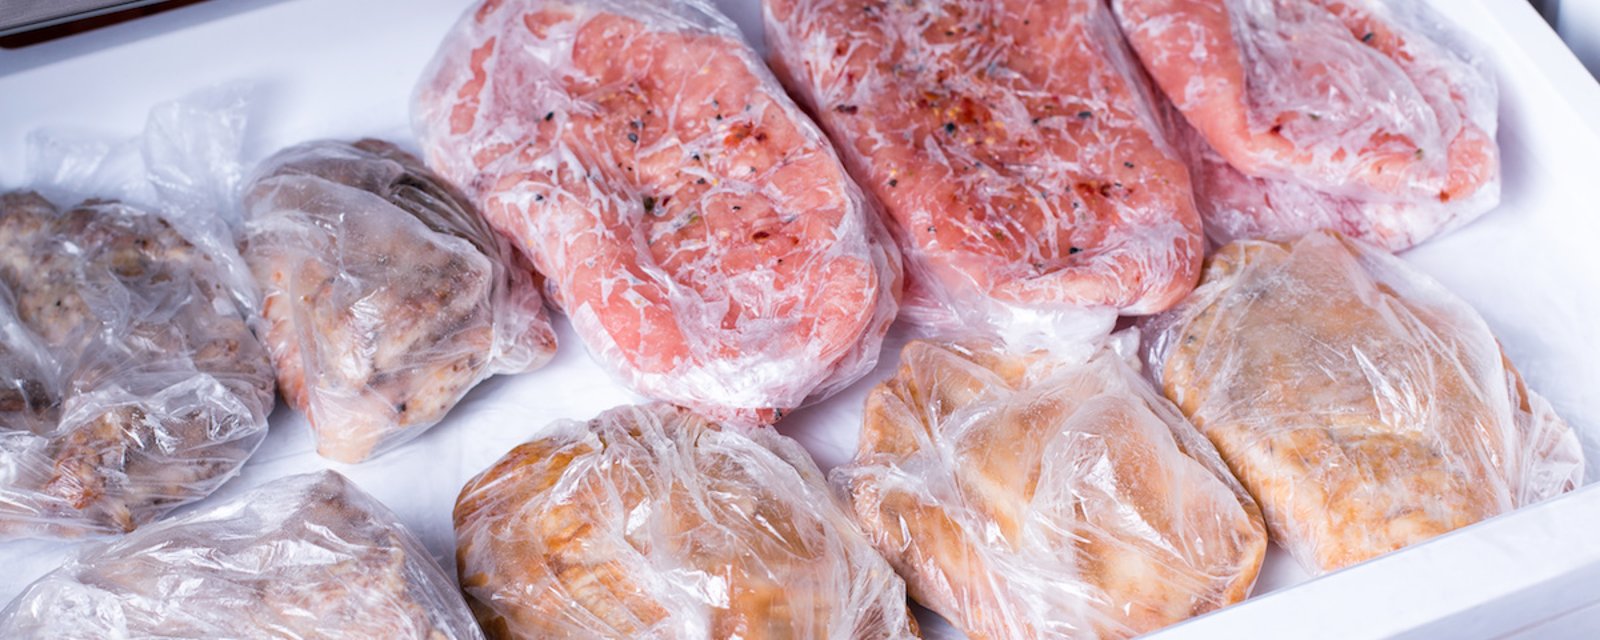 Congélation: combien de temps peut-on congeler chaque type de viande?